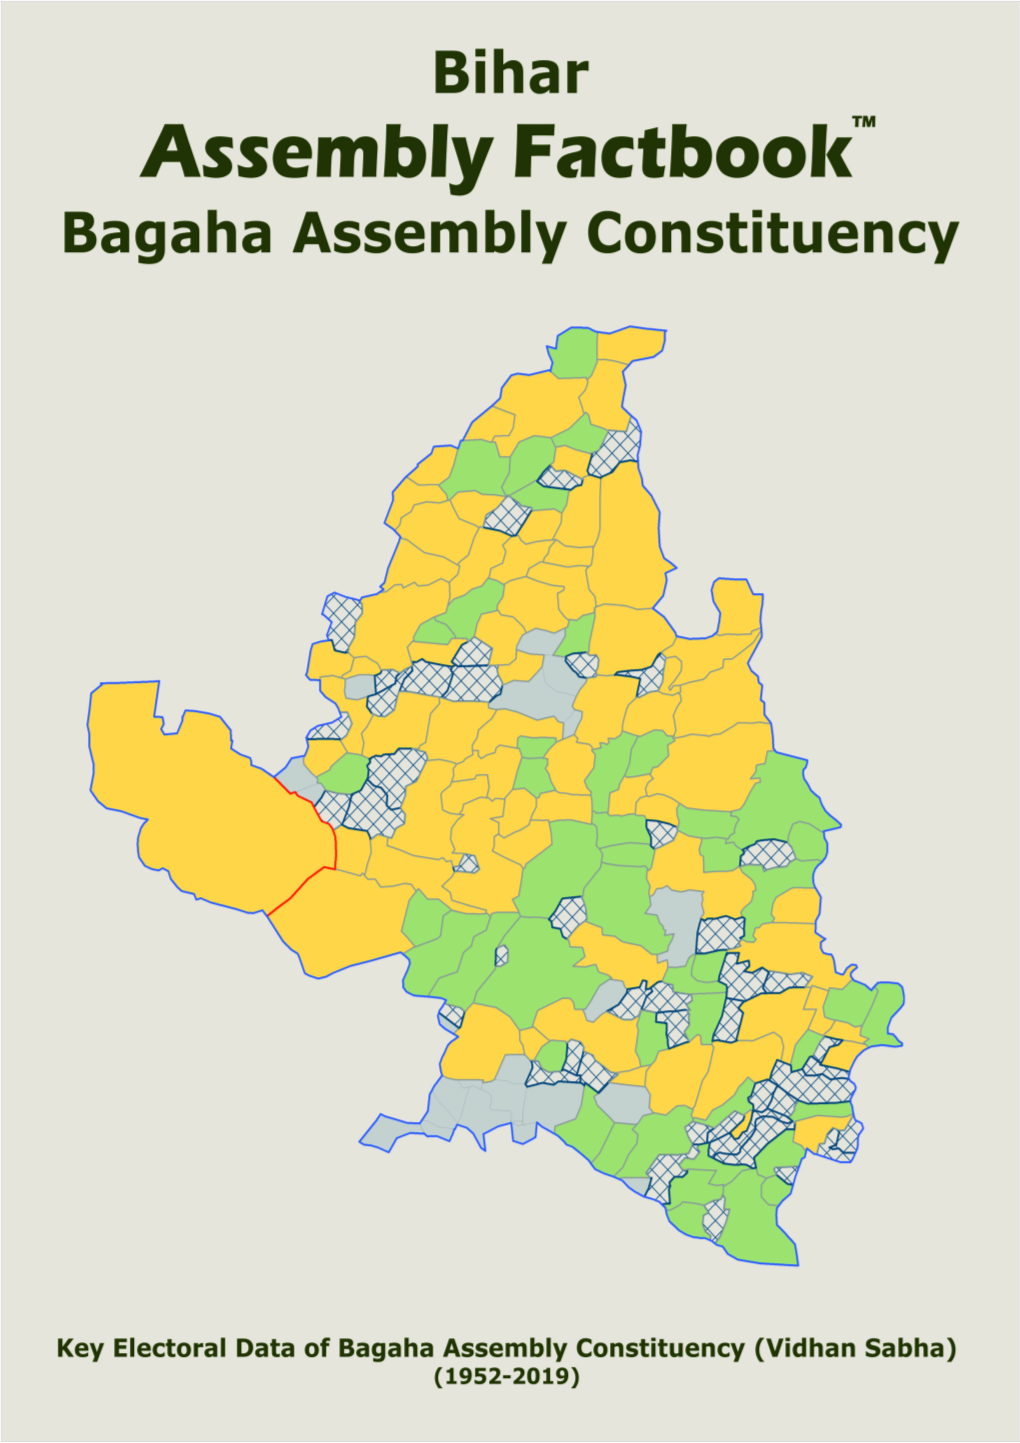 Bagaha Assembly Bihar Factbook